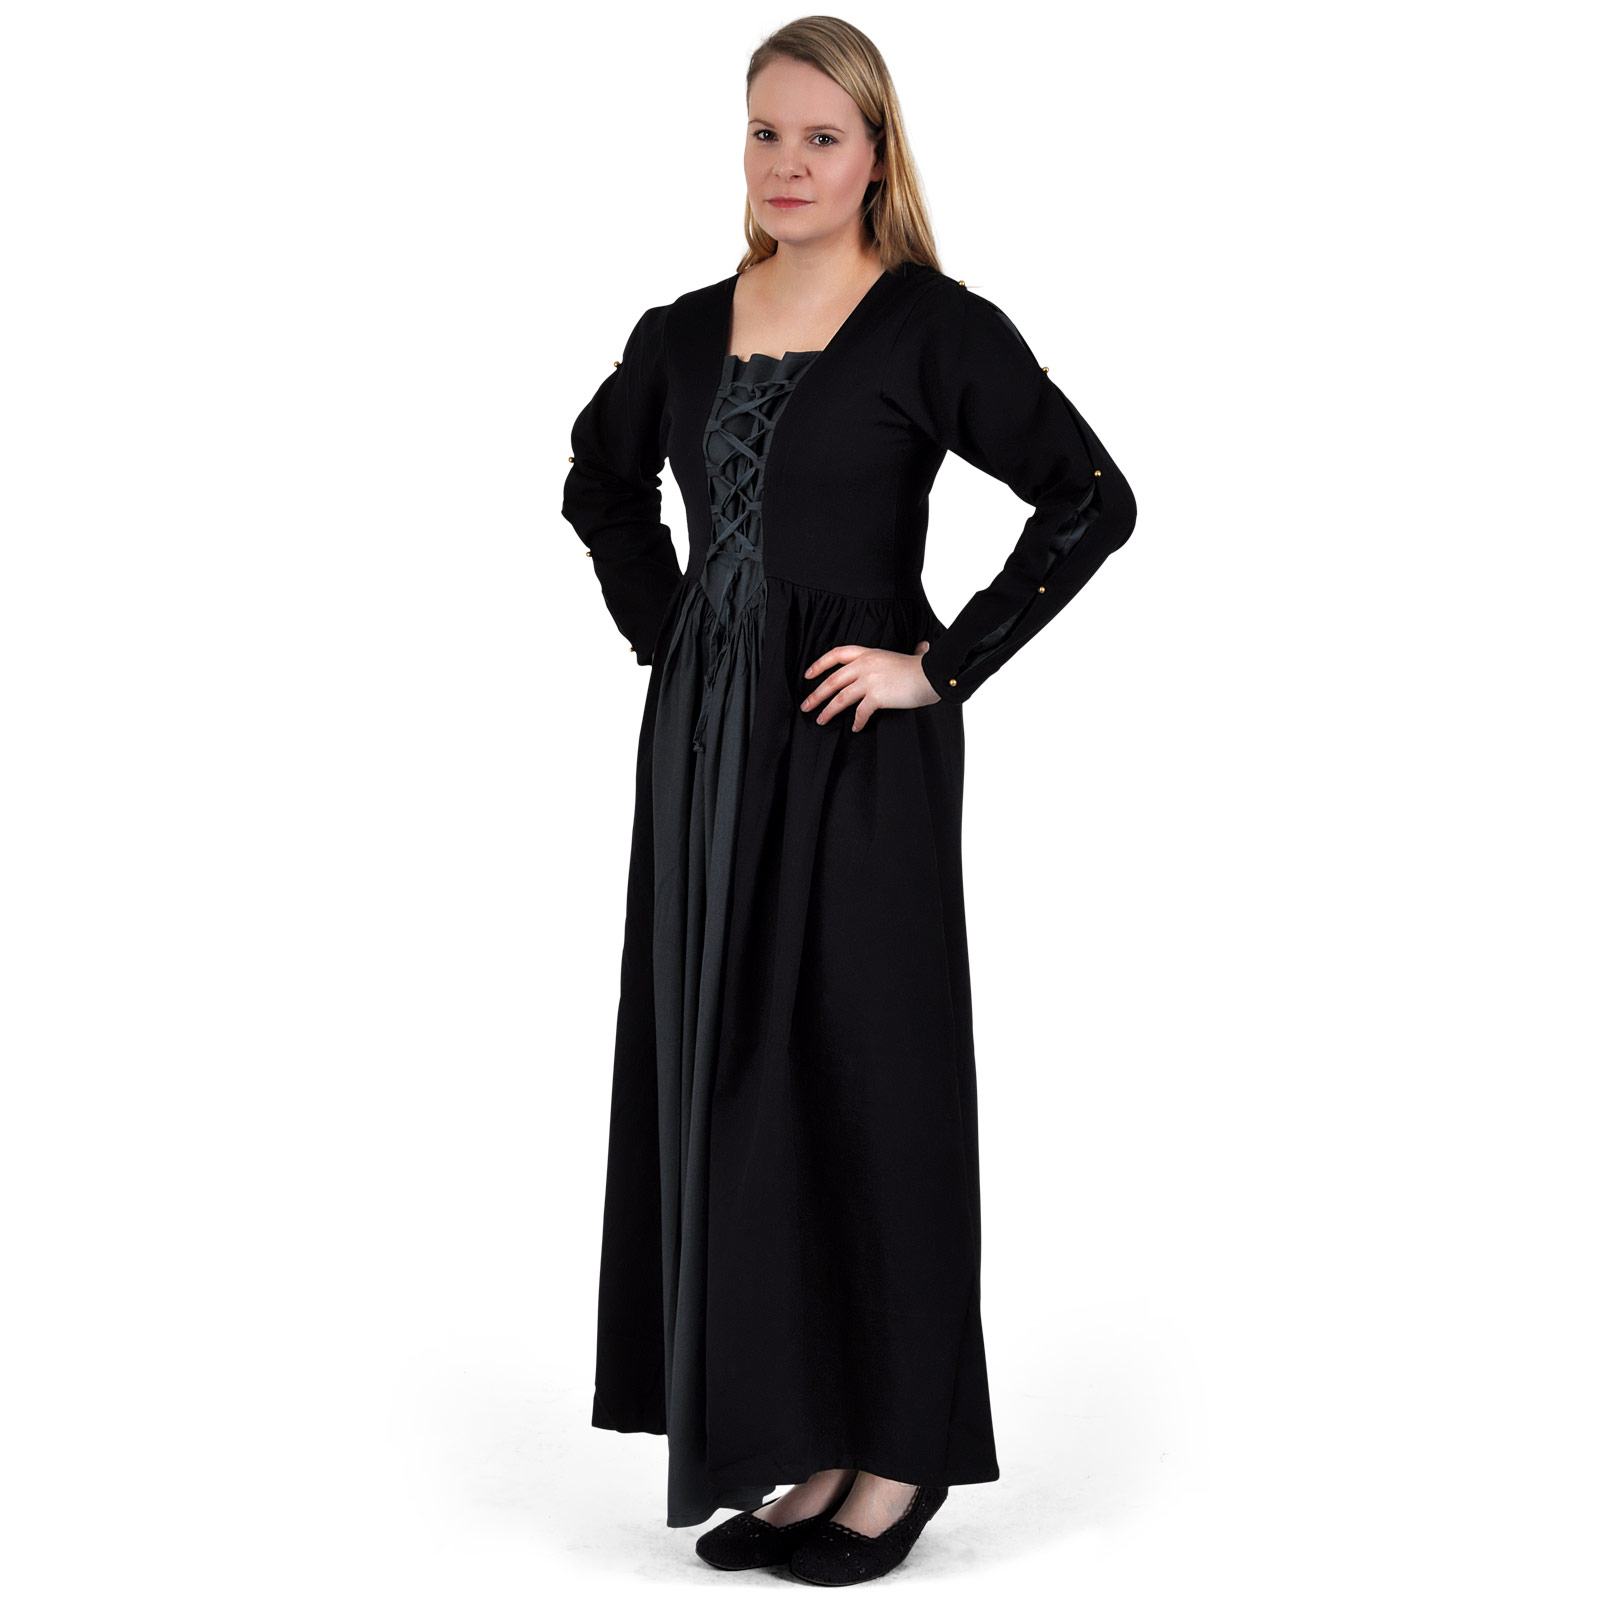 Mittelalter Kleid Orianne schwarz-blaugrau